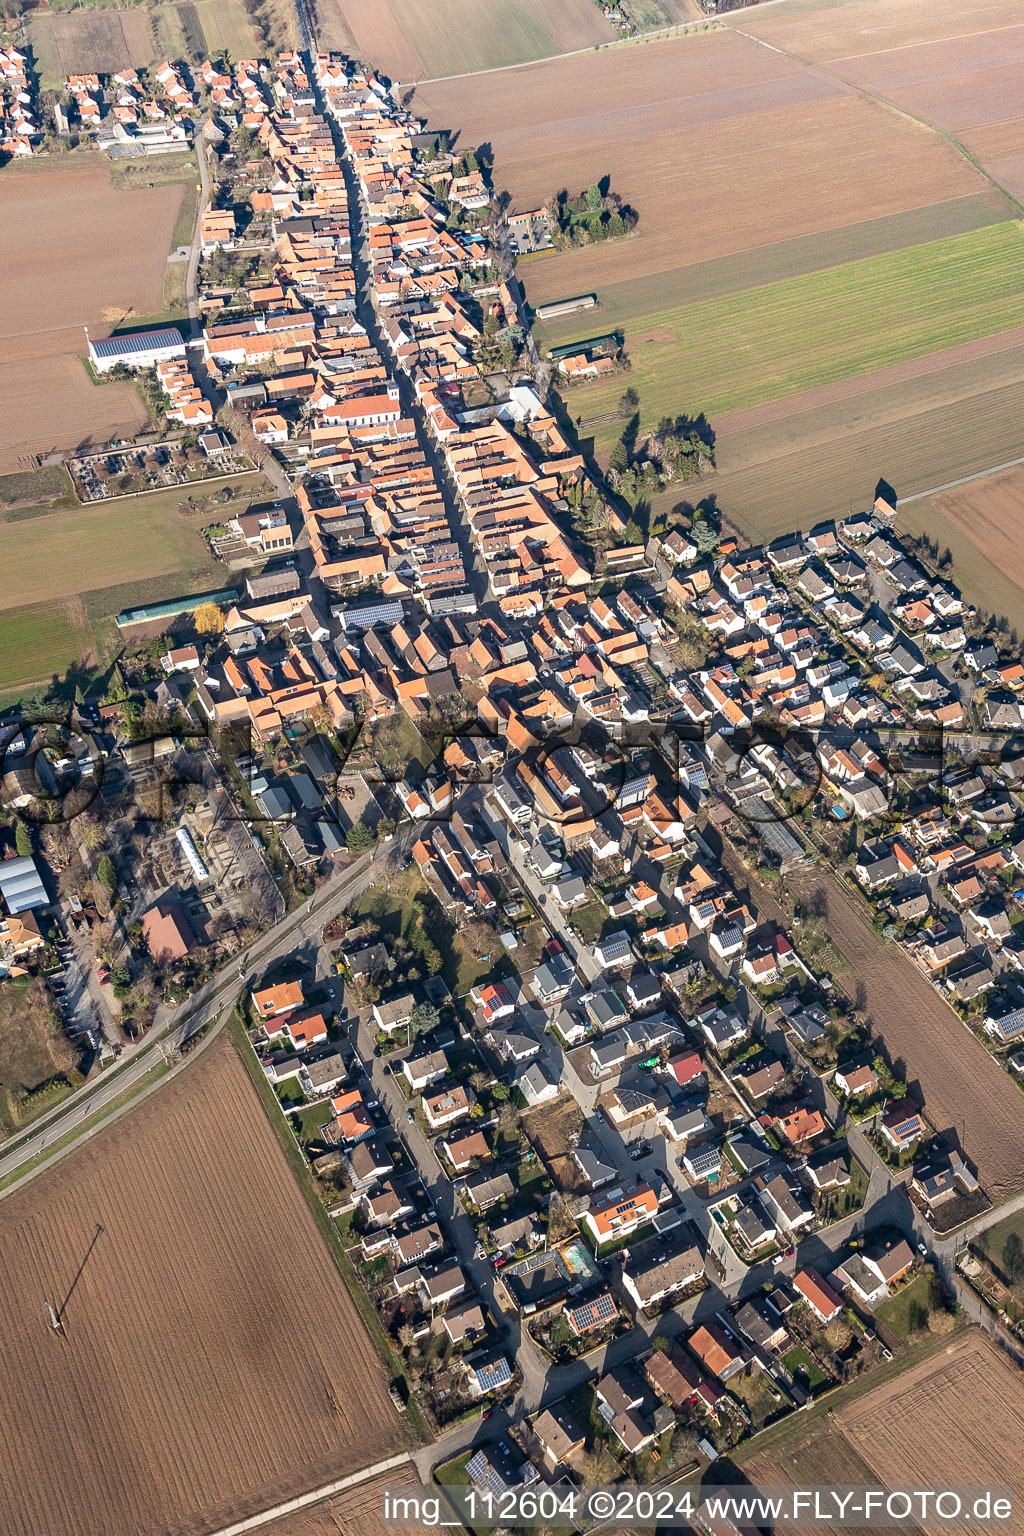 Luftbild von Dorf - Ansicht am Rande von landwirtschaftlichen Feldern und Nutzflächen im Ortsteil Hayna in Herxheim bei Landau (Pfalz) in Herxheim bei Landau/Pfalz im Bundesland Rheinland-Pfalz, Deutschland